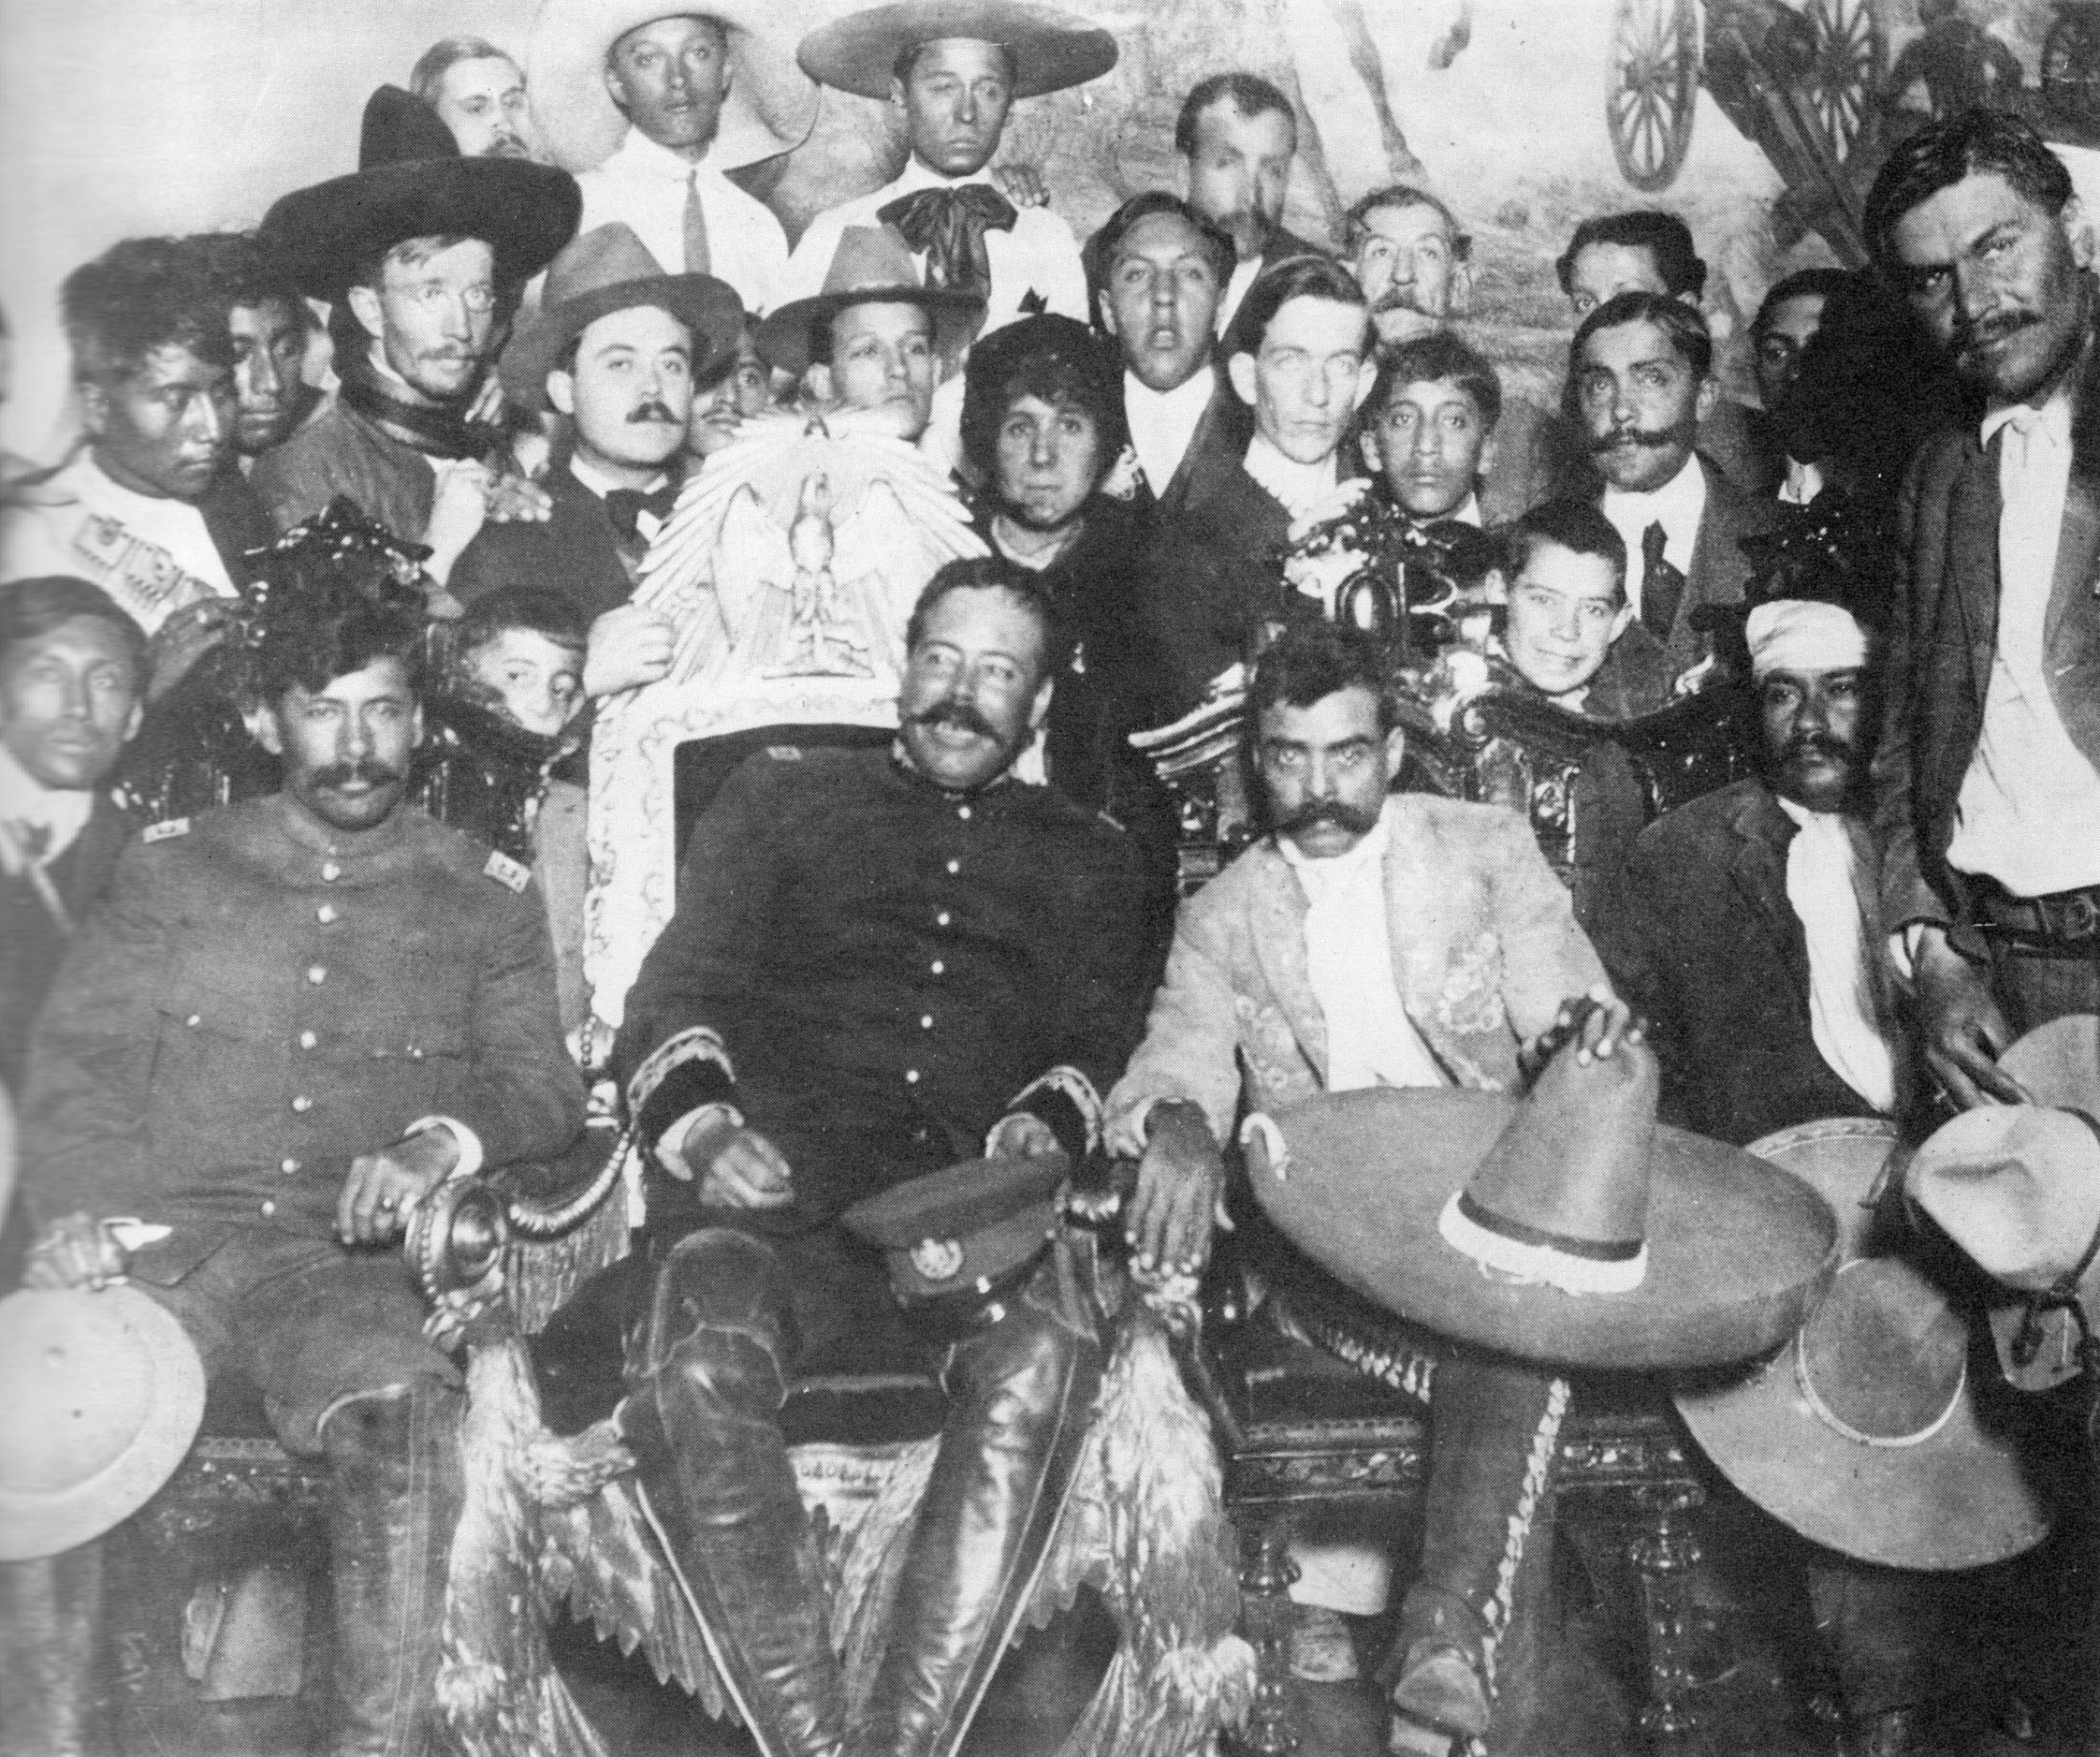 Pancho Villa and Emiliano Zapata at Presidential Palace